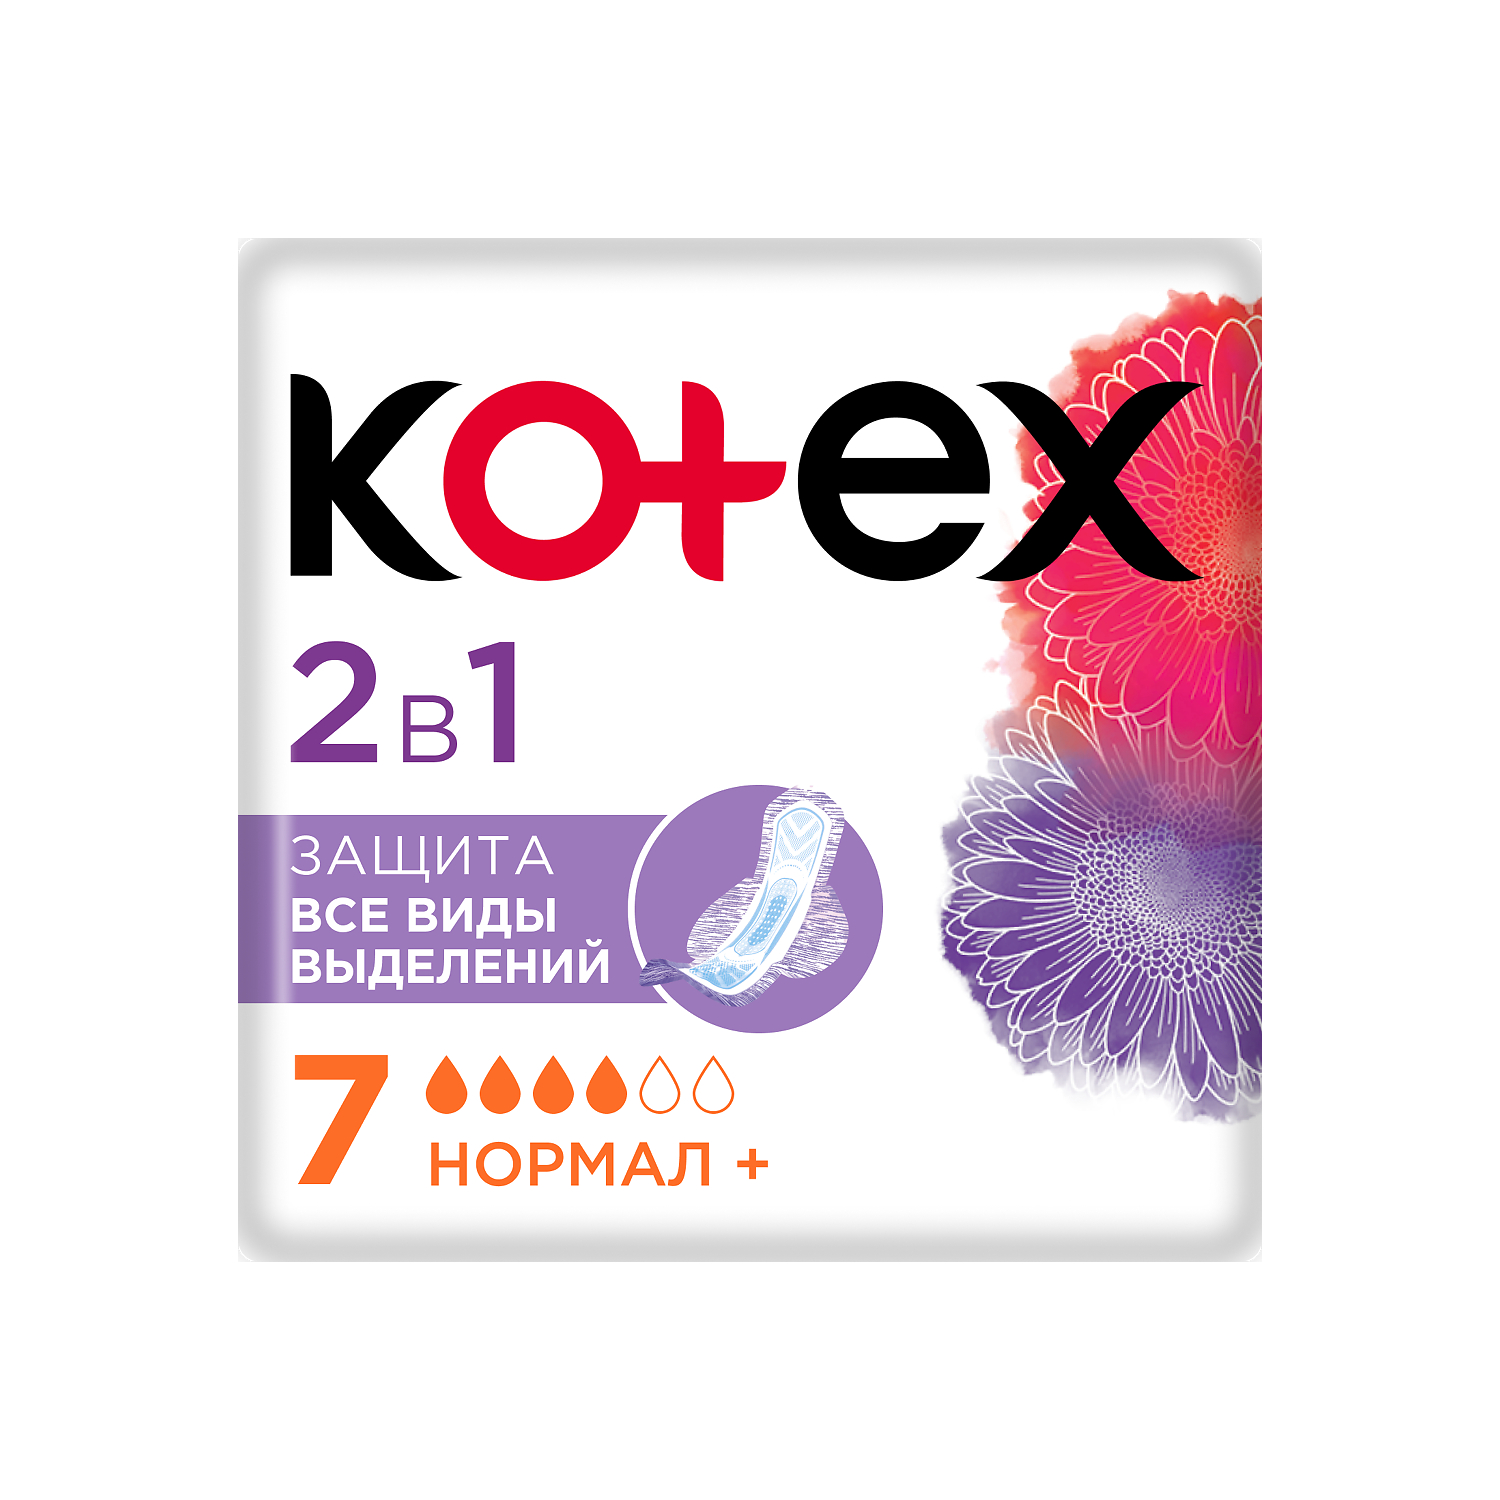 Прокладки Kleenex 2в1 Нормал+ 7 шт